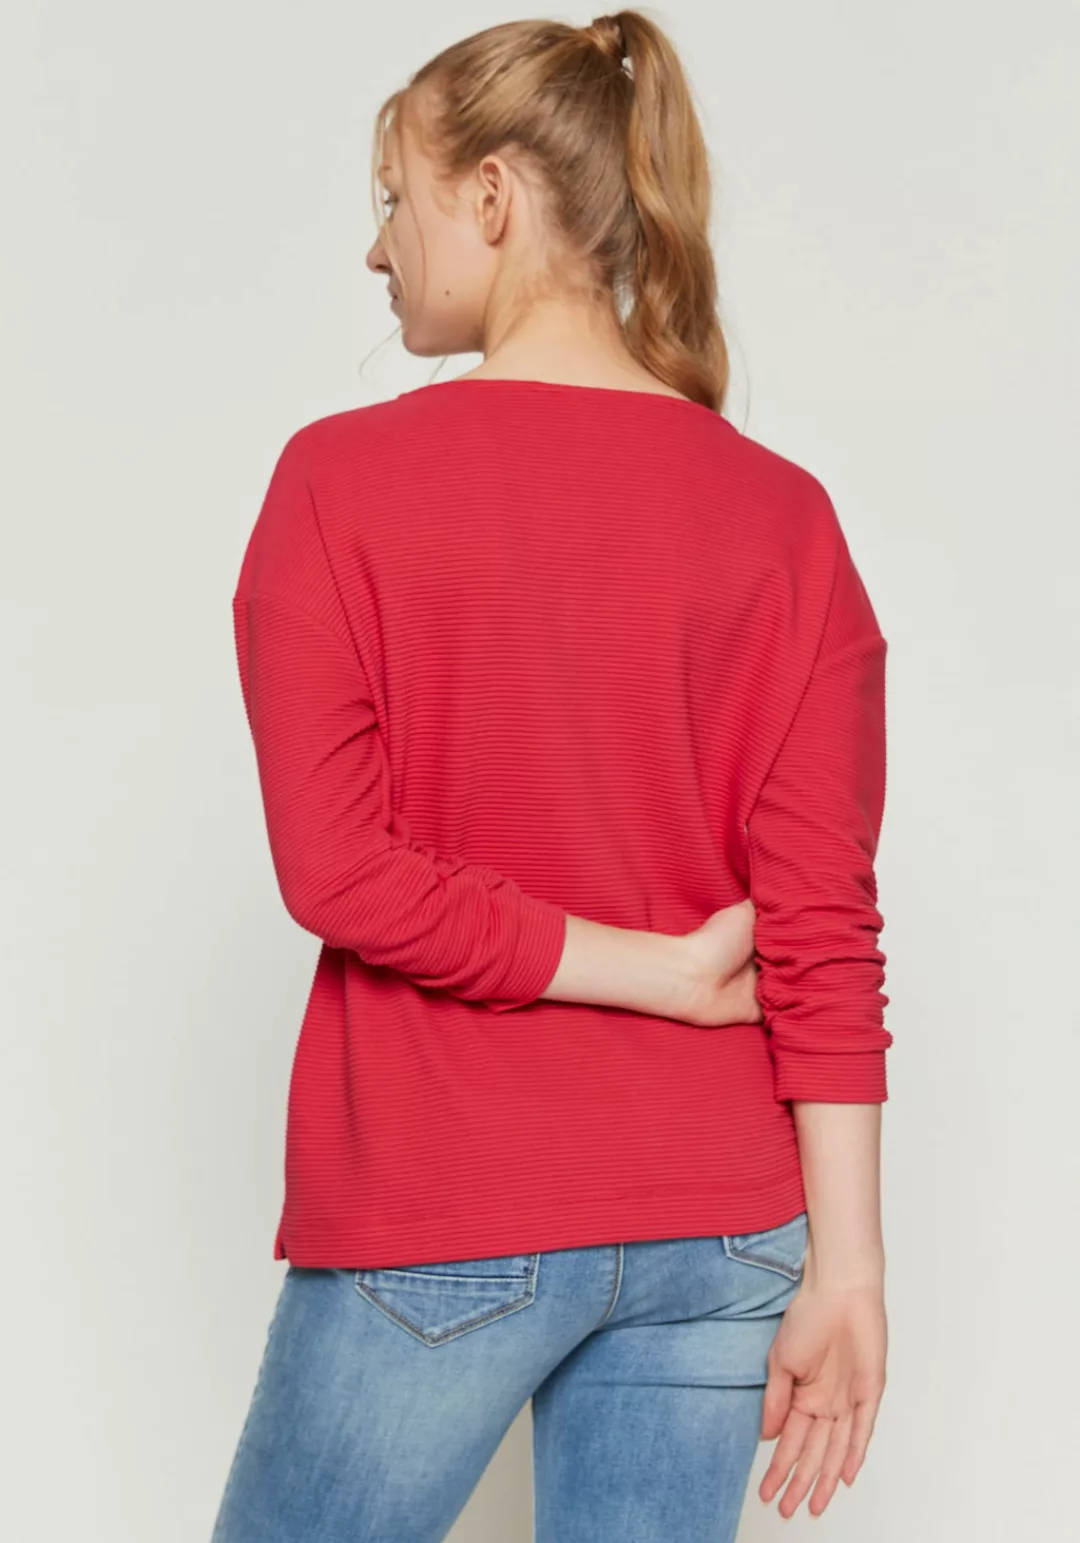 ZABAIONE Sweater Shirt El44la günstig online kaufen